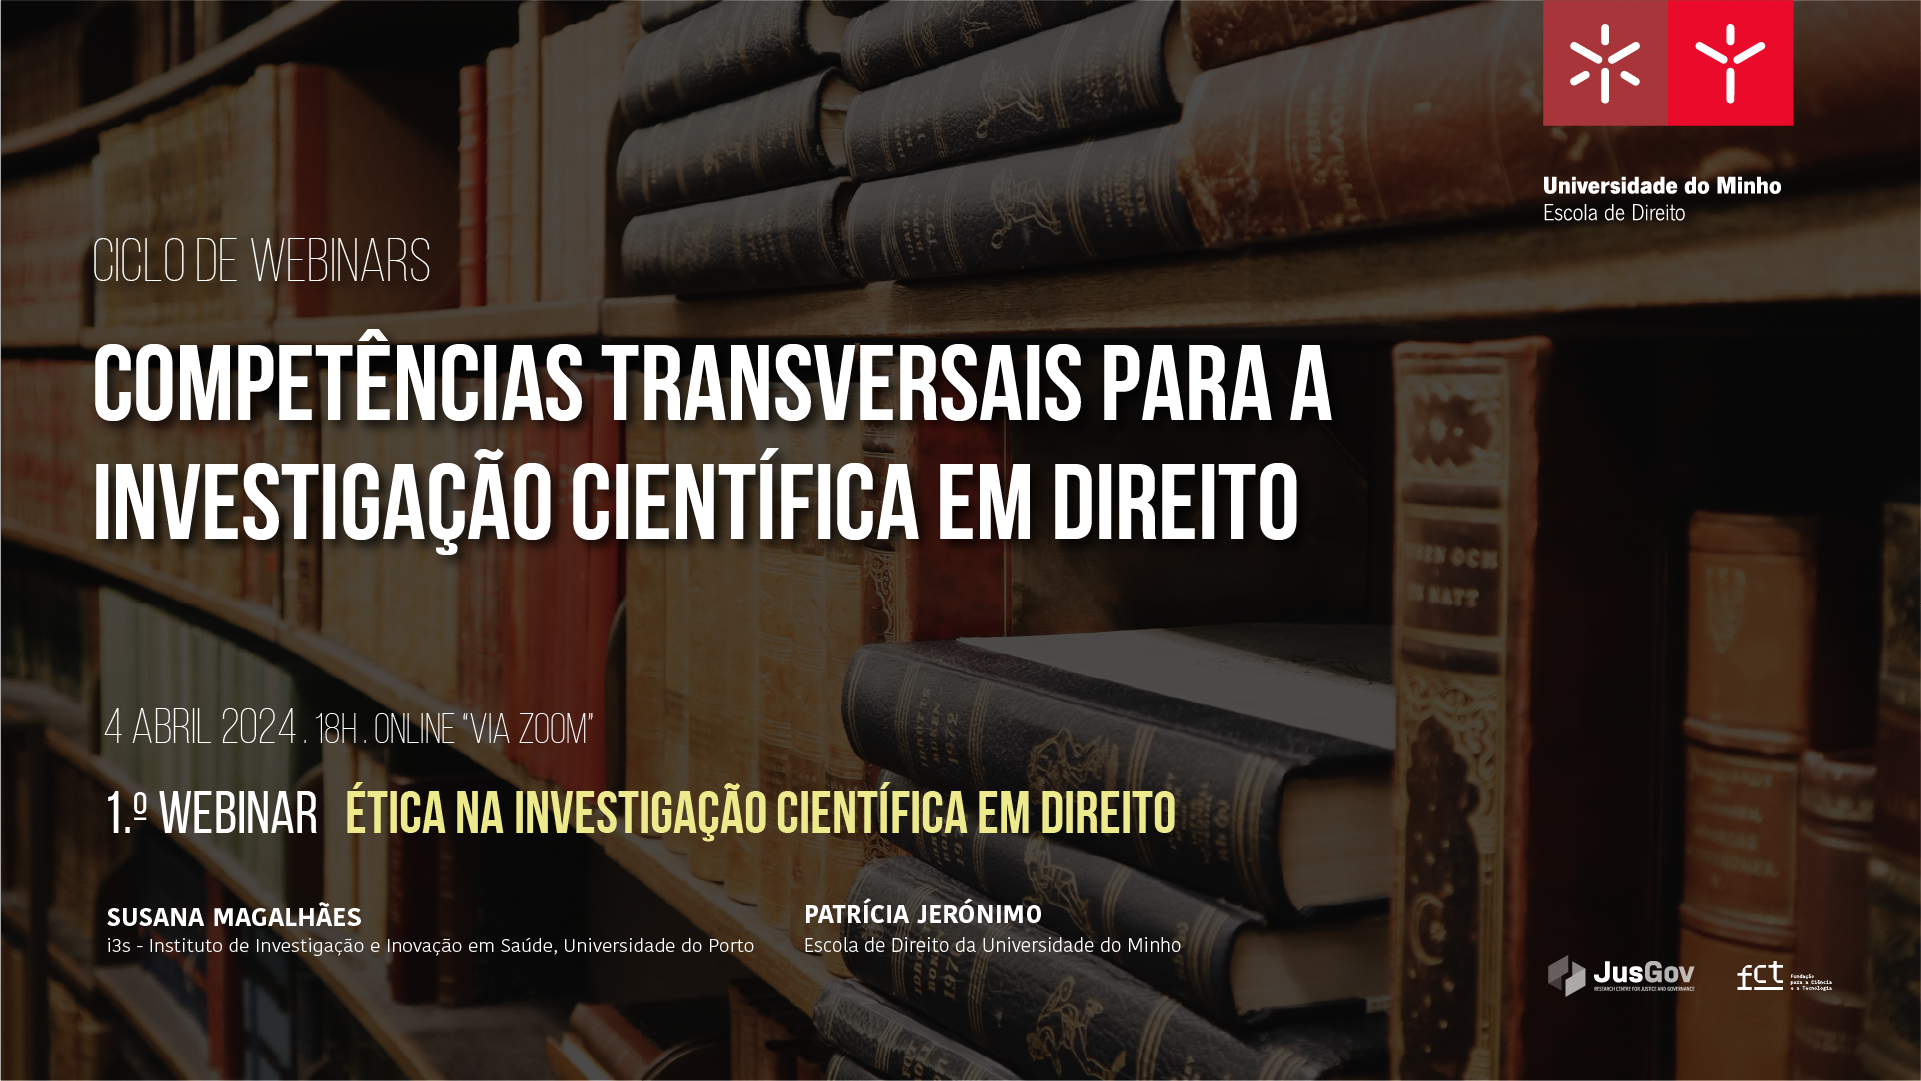 Ciclo de Webinars - Competências Transversais para a investigação científica em Direito